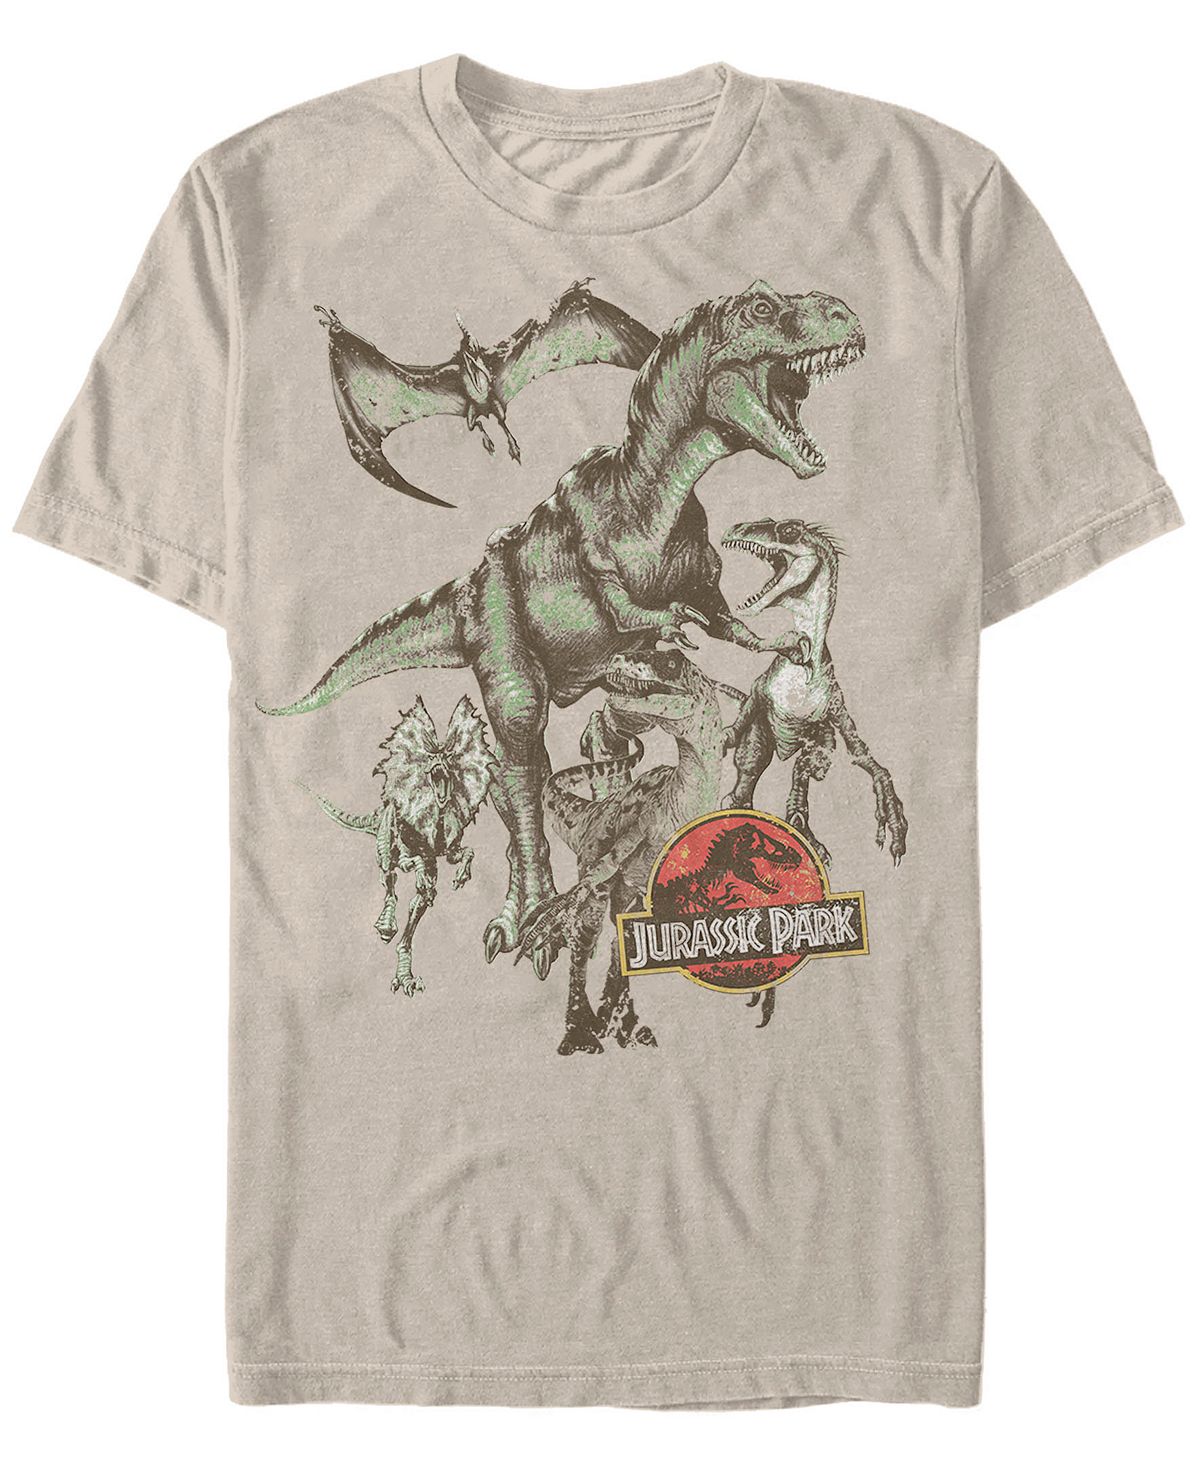 Мужская футболка с коротким рукавом в стиле ретро «парк юрского периода» с динозаврами Fifth Sun